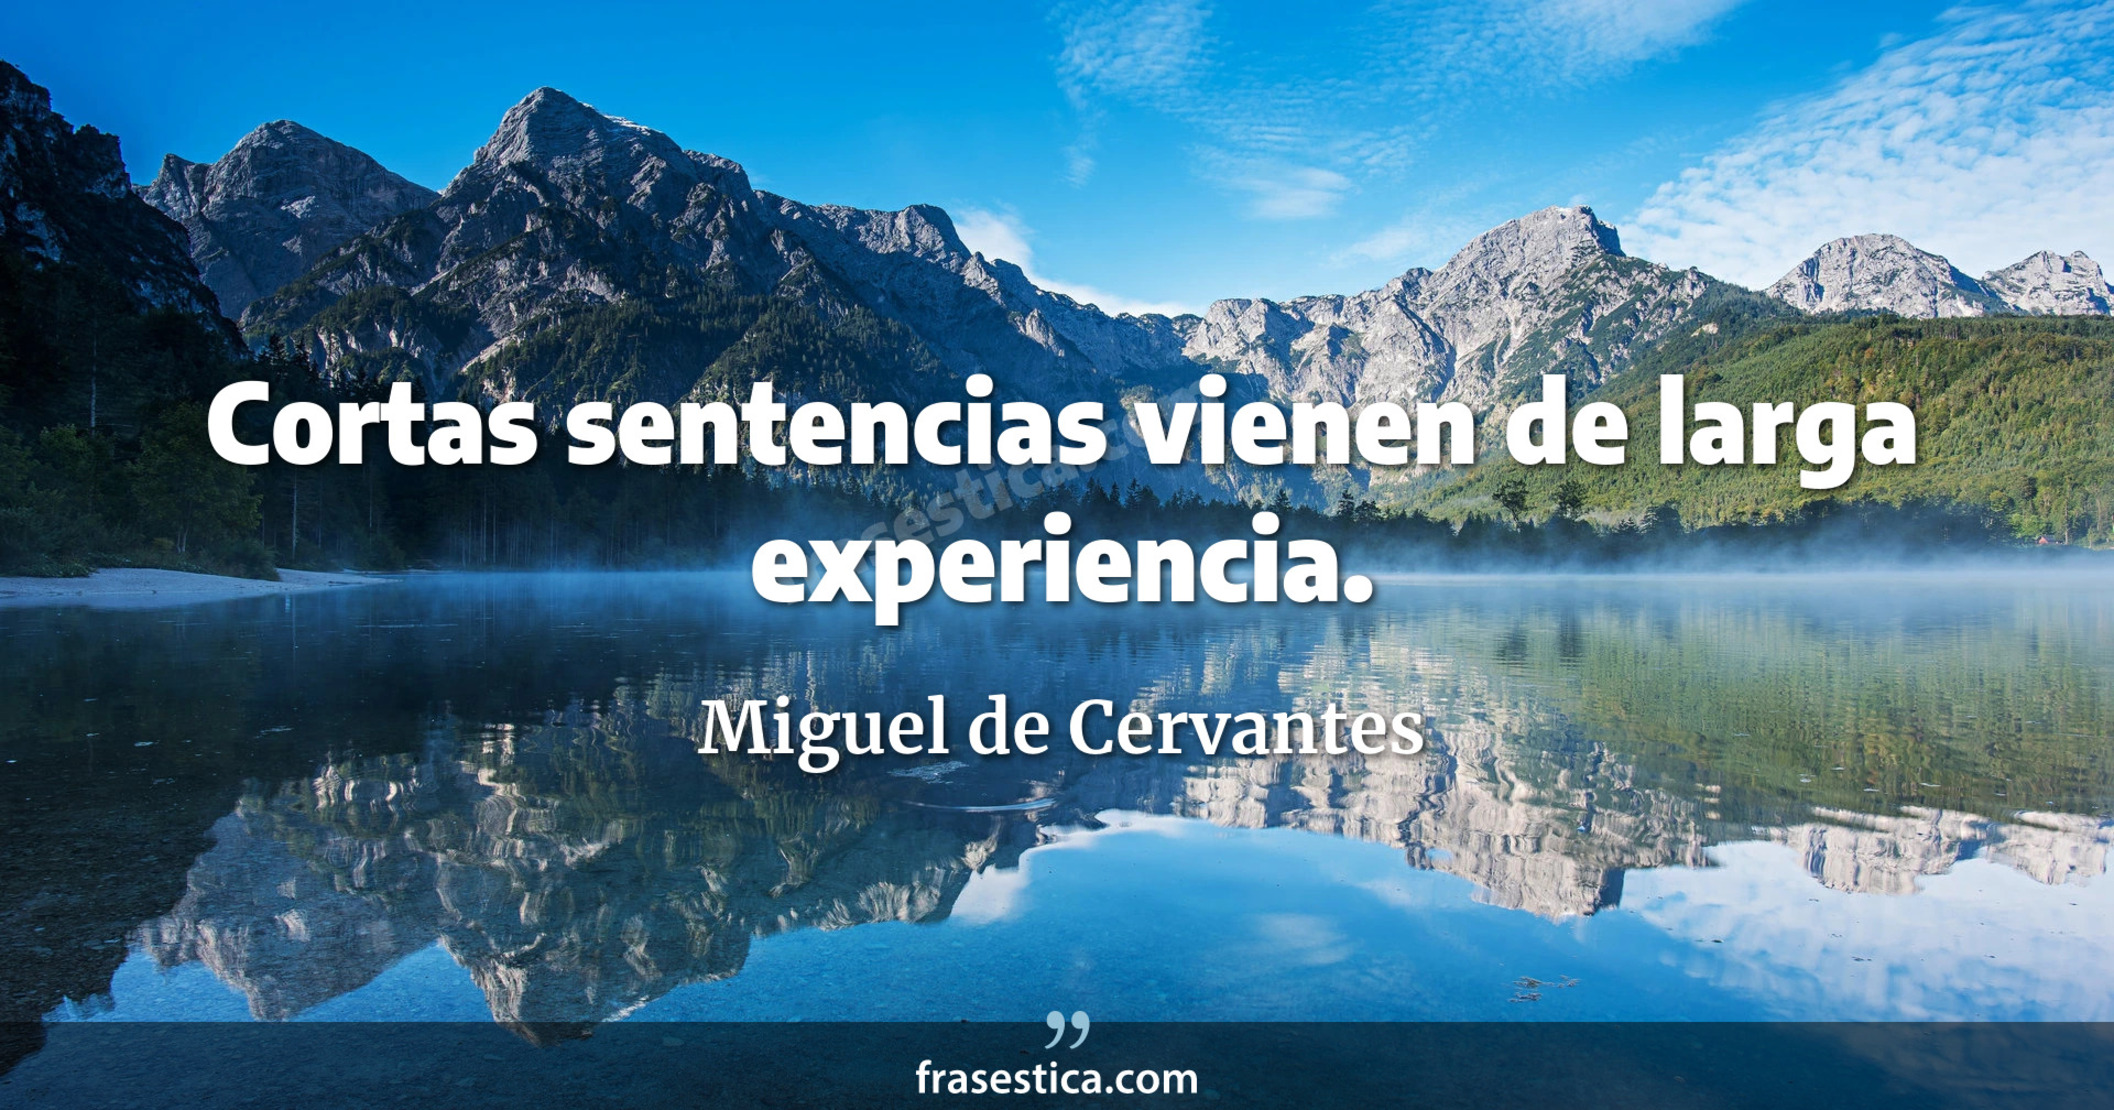 Cortas sentencias vienen de larga experiencia. - Miguel de Cervantes